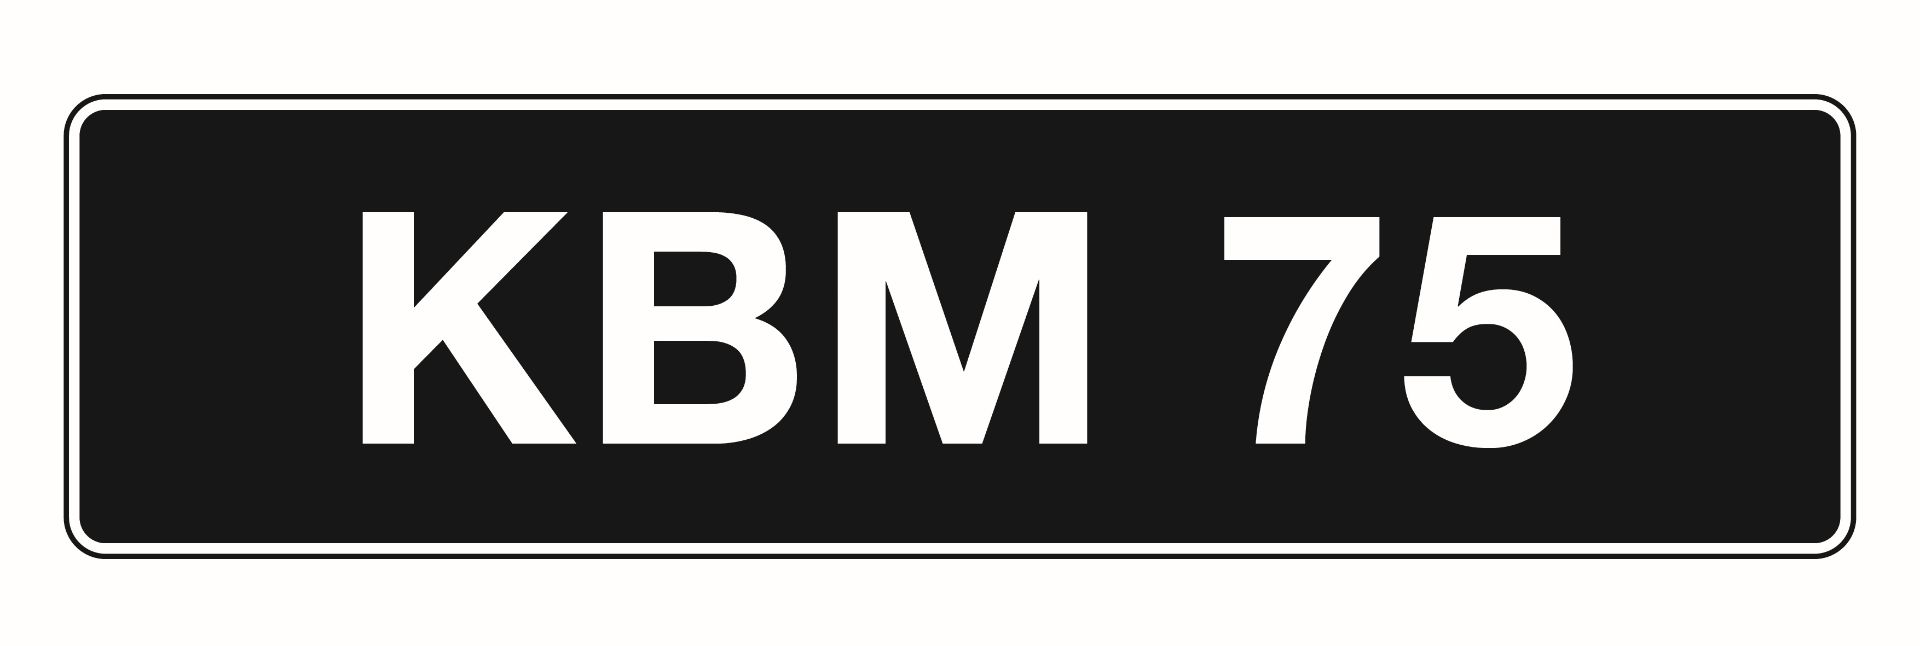 'KBM 75' - UK Vehicle Registration Number,